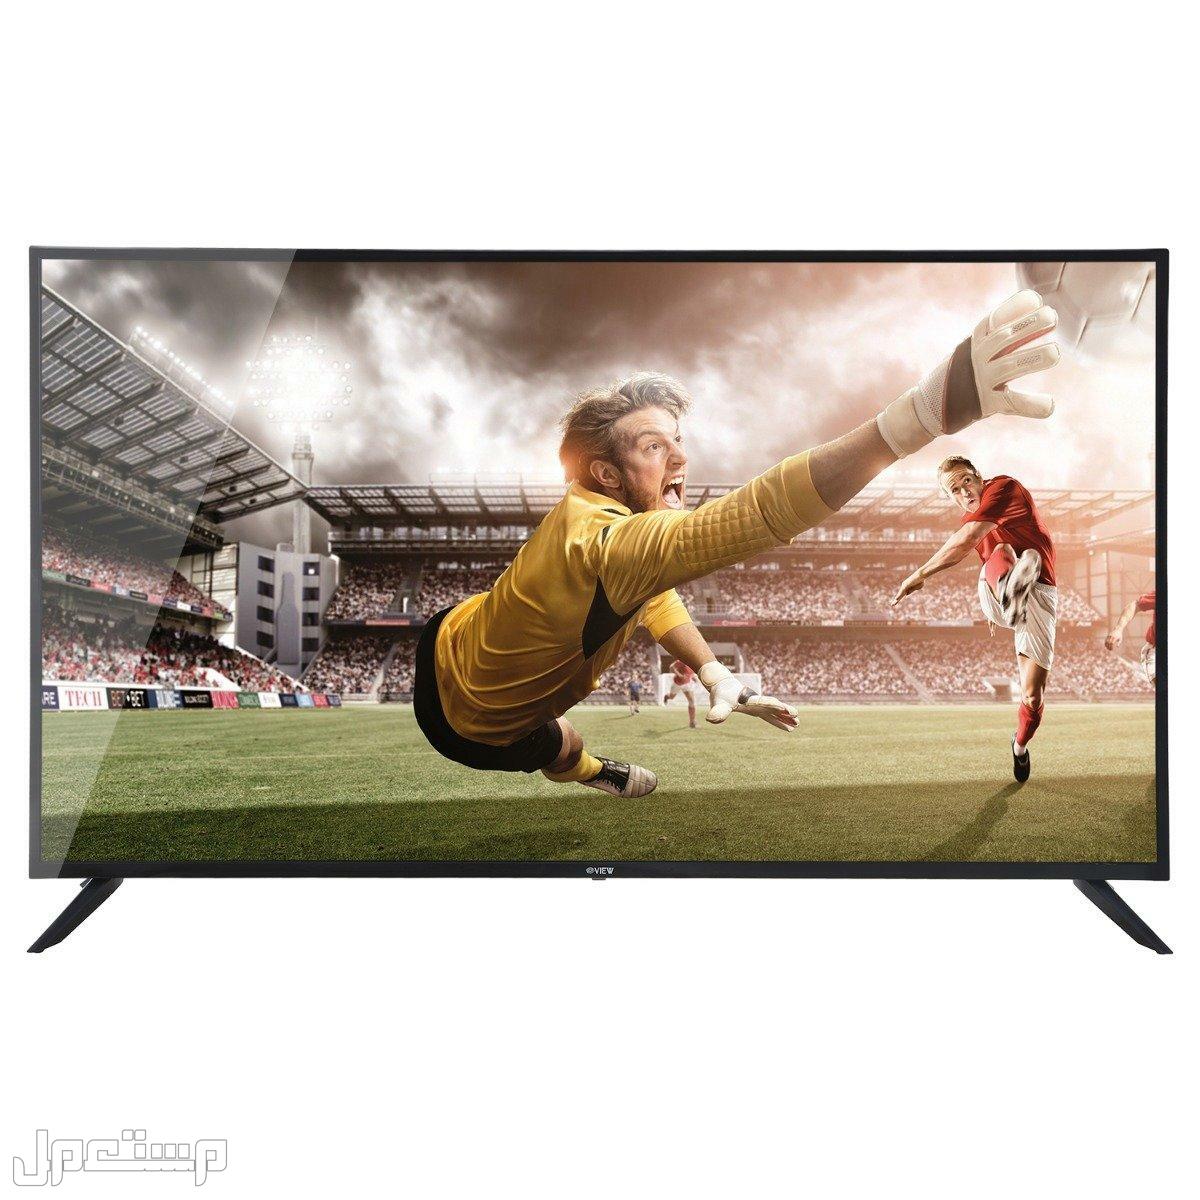 أرخص شاشات تلفزيون يمكنك شرائها (دليلك الكامل) في الكويت ارخص شاشات تلفزيون